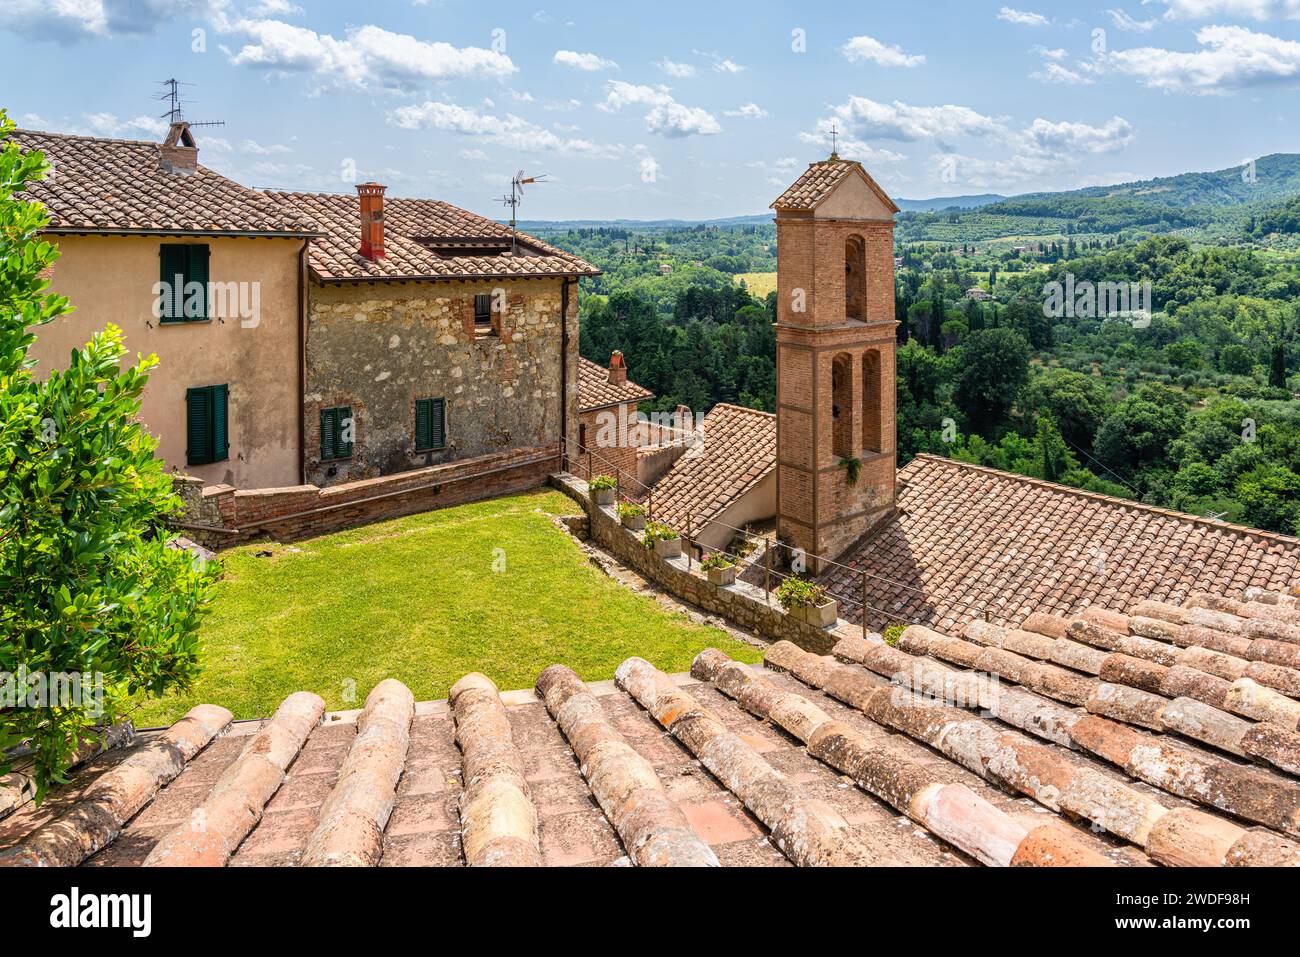 Cetona, un bellissimo villaggio toscano in provincia di Siena. Toscana, Italia. Foto Stock